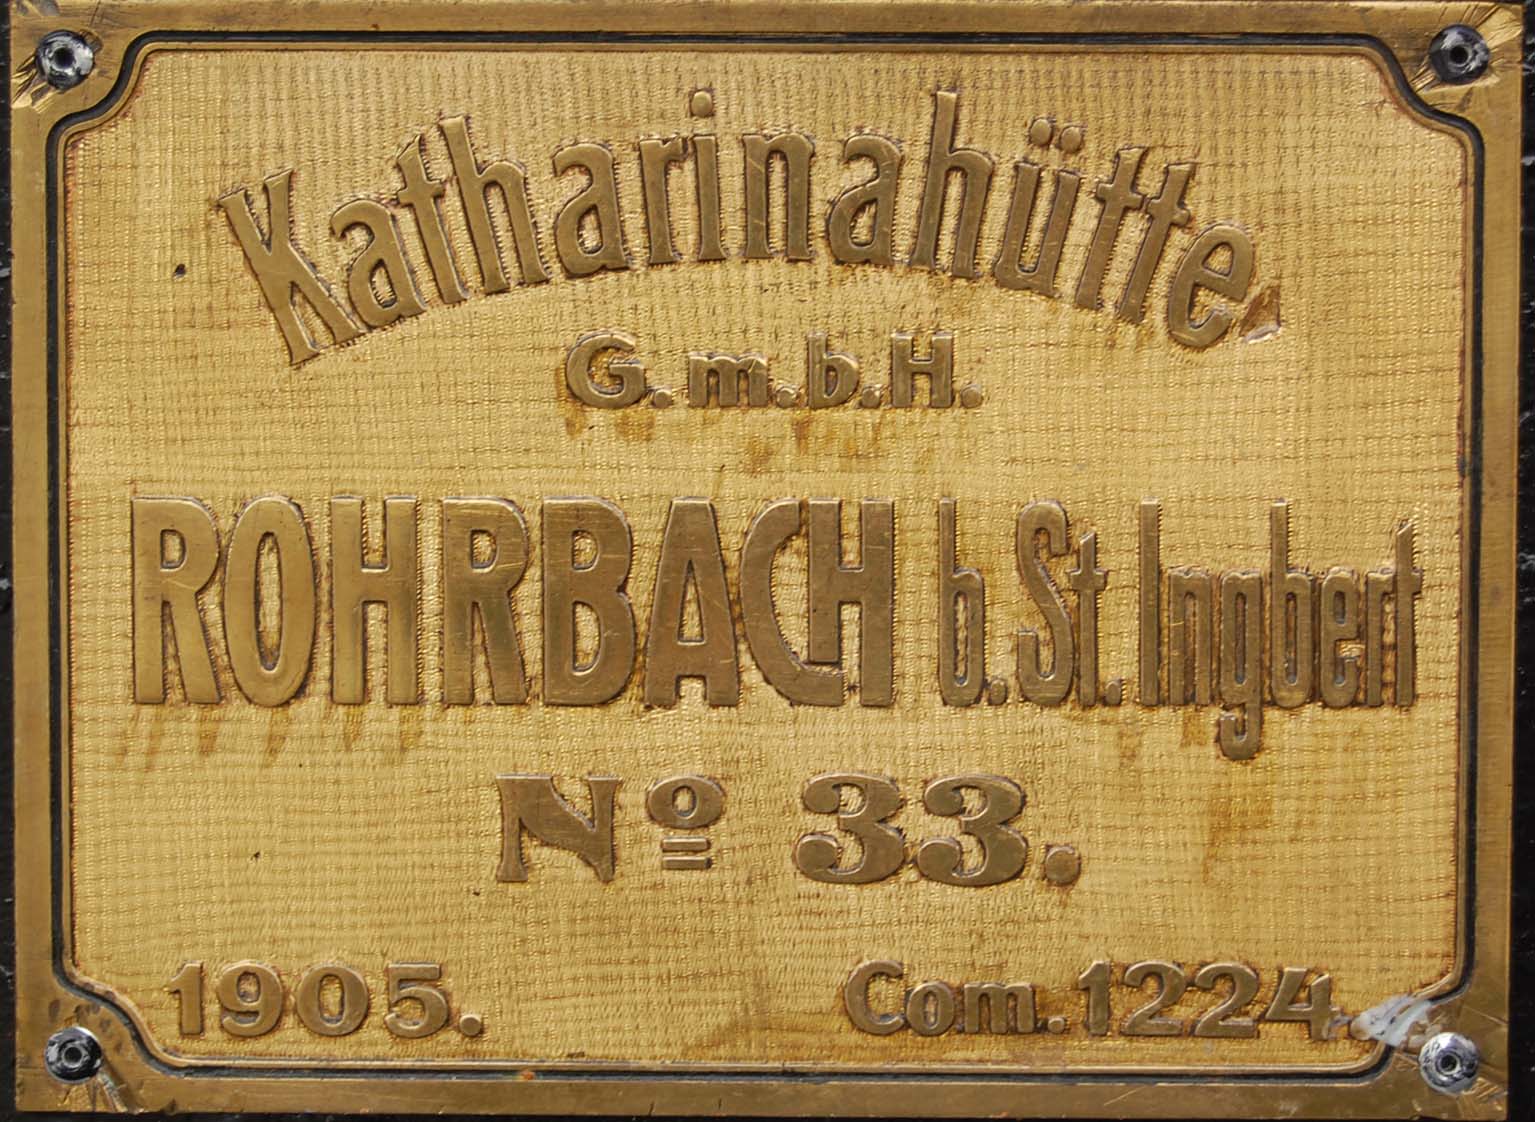 Katharinahütte, Rohrbach 1905